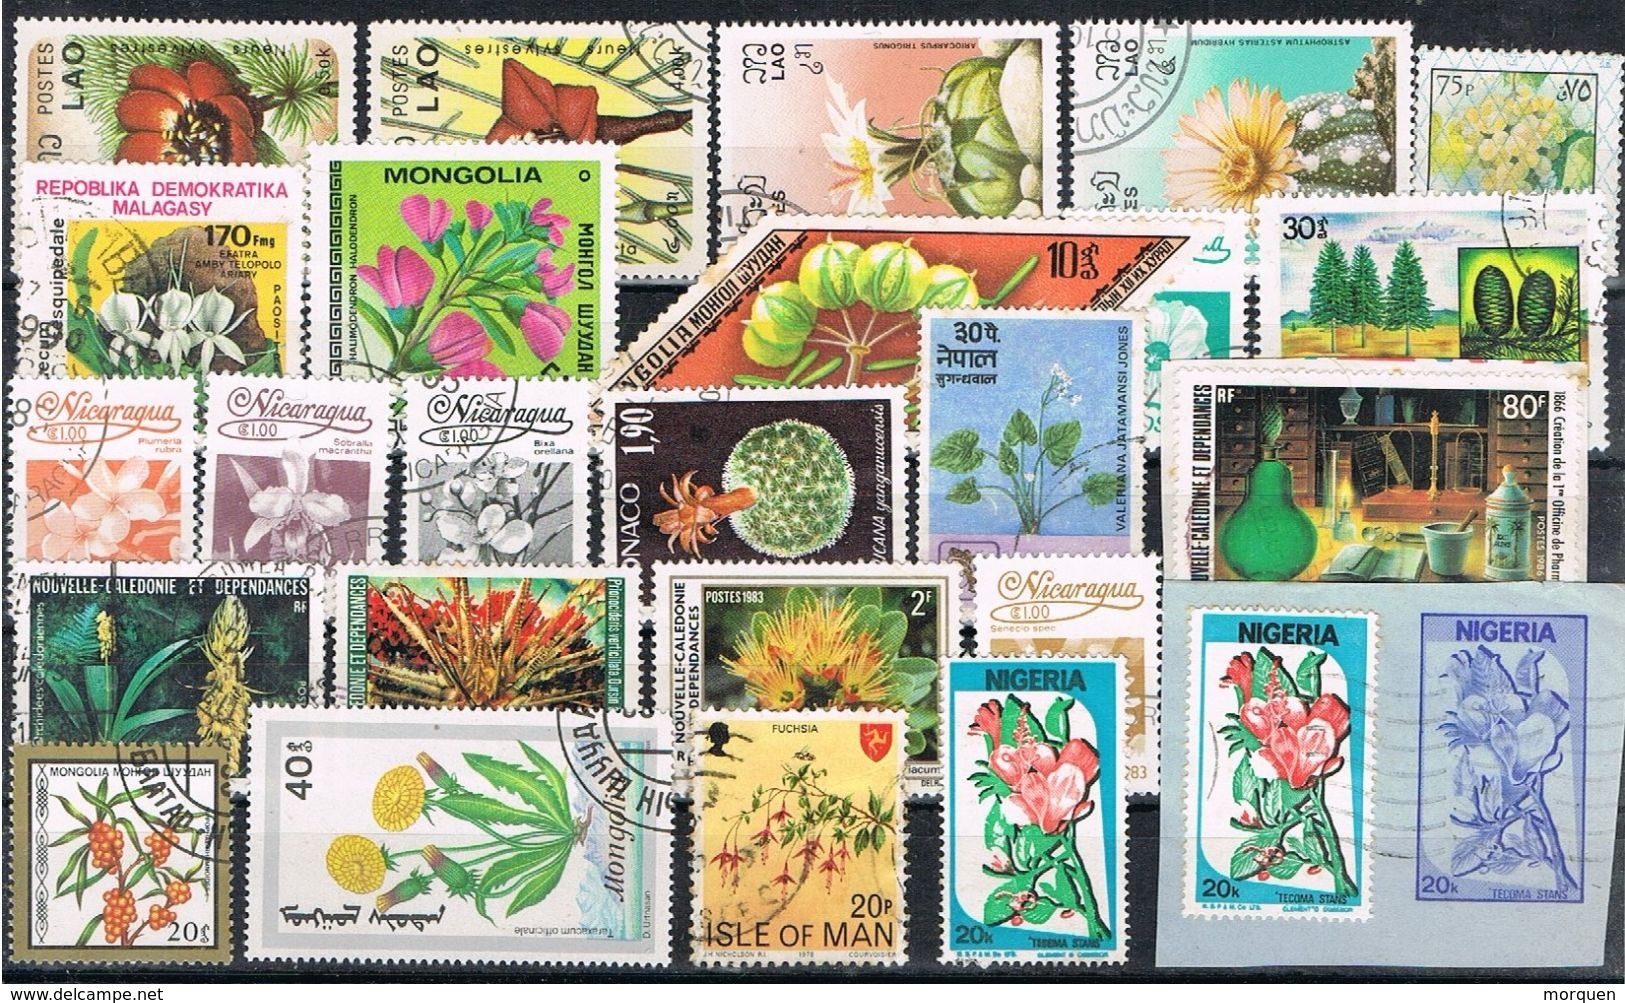 27230. Gran Lote  + 560 sellos mundiales, VEGETAL, Plantas, Flores, cactus, plantas medicianles, frutas, arboles º/*/**